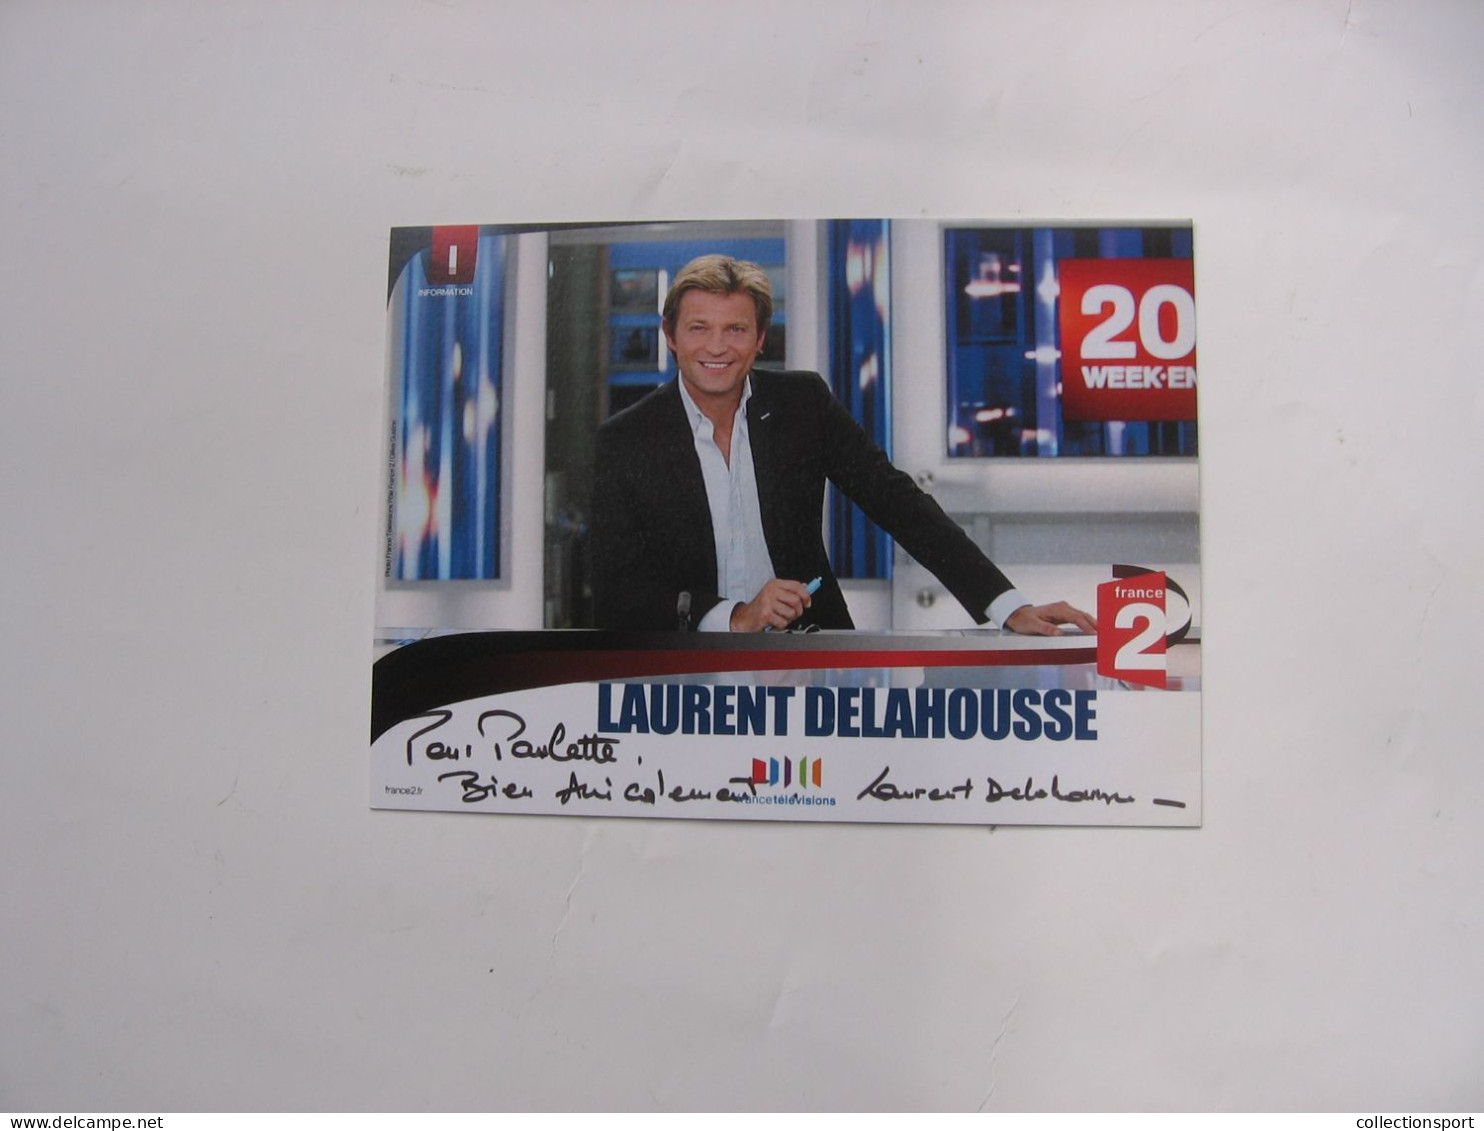 Autographe Laurent Delahousse - Television & Internet